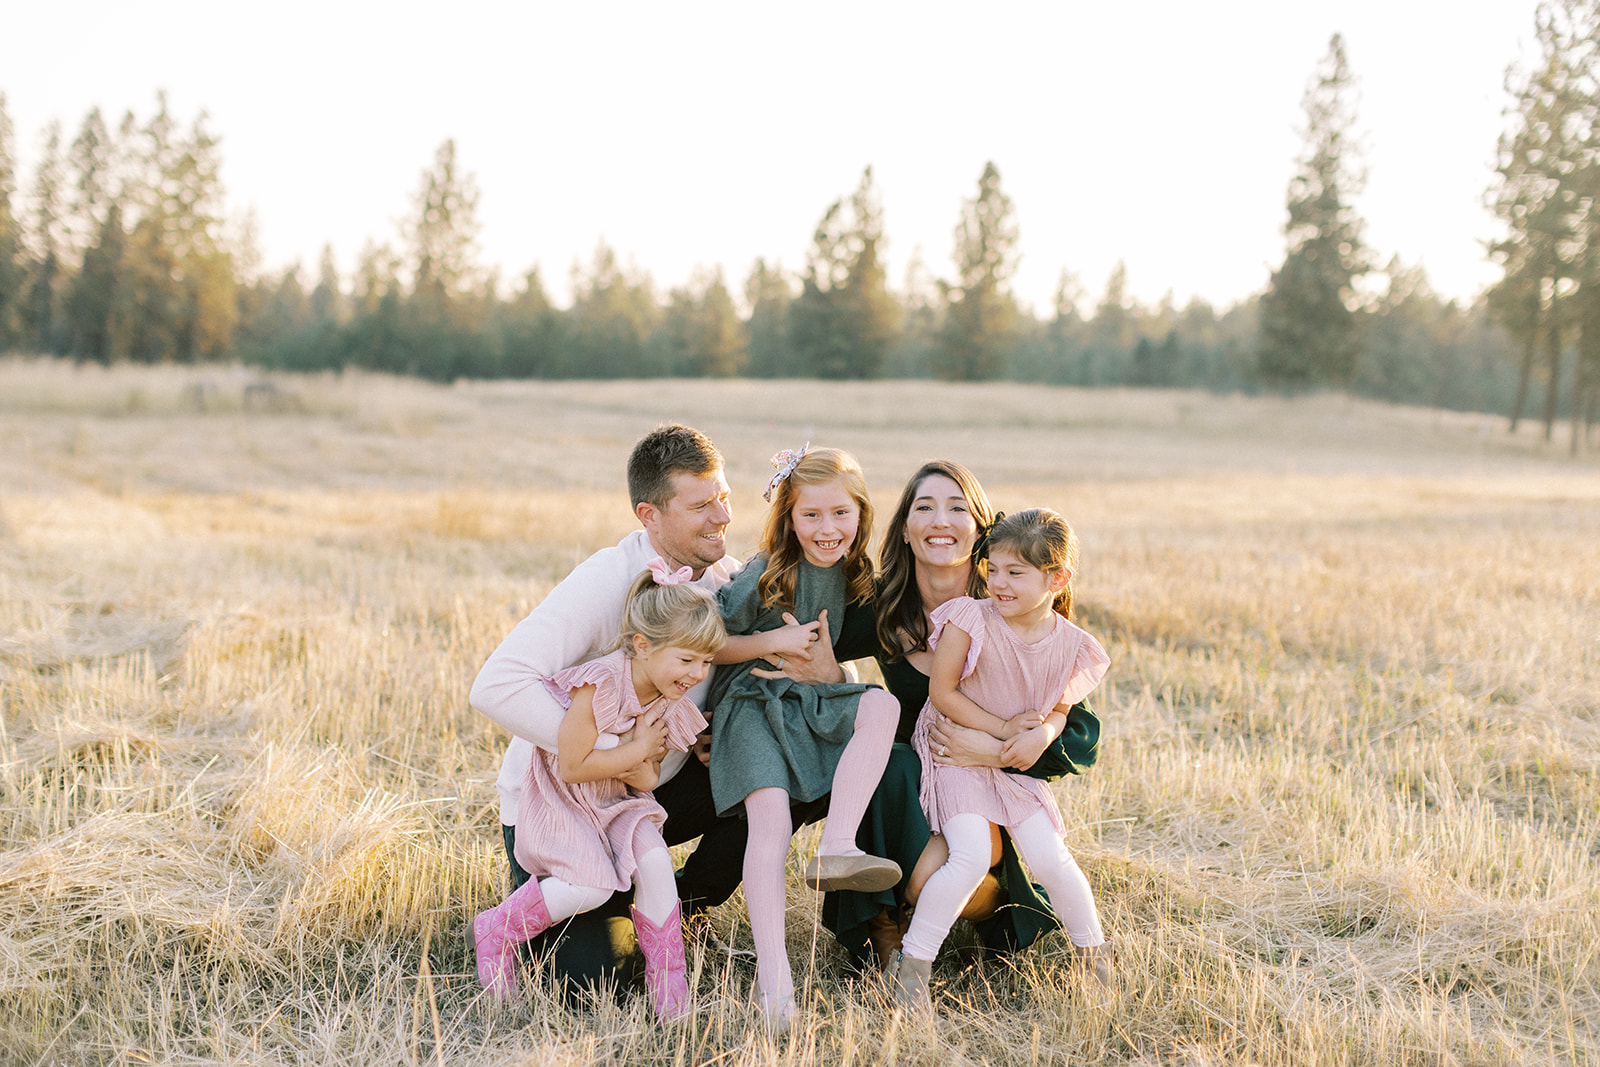 Fall family session in open field in Spokane, Washington.